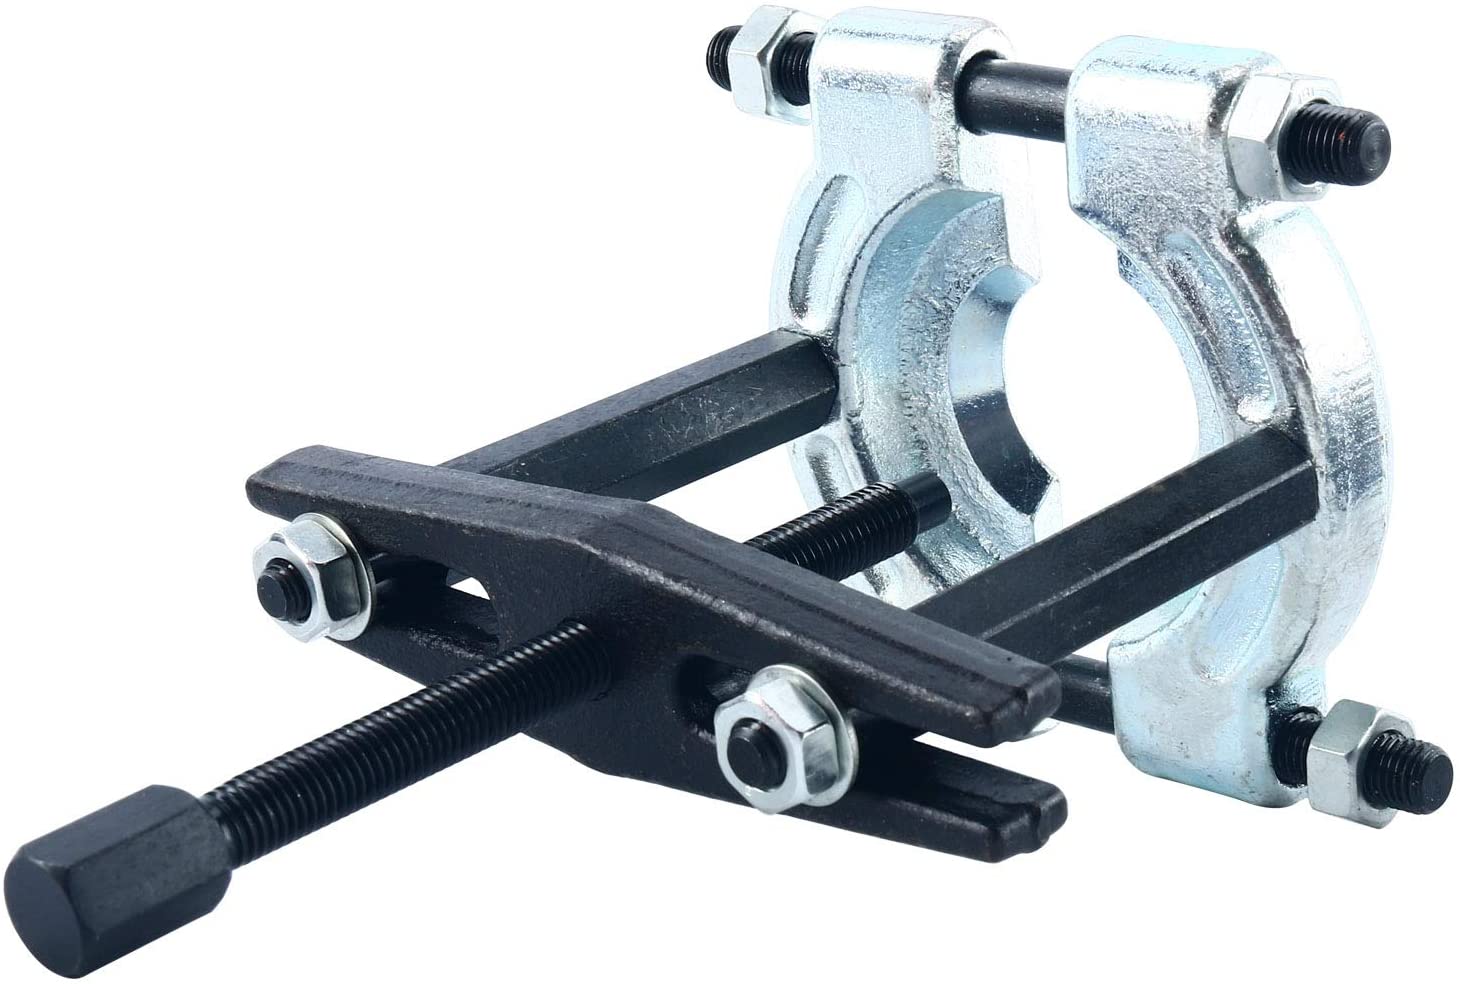 Extractor de rodamientos mini de 2 y 3 patas articuladas — Ferretería Luma